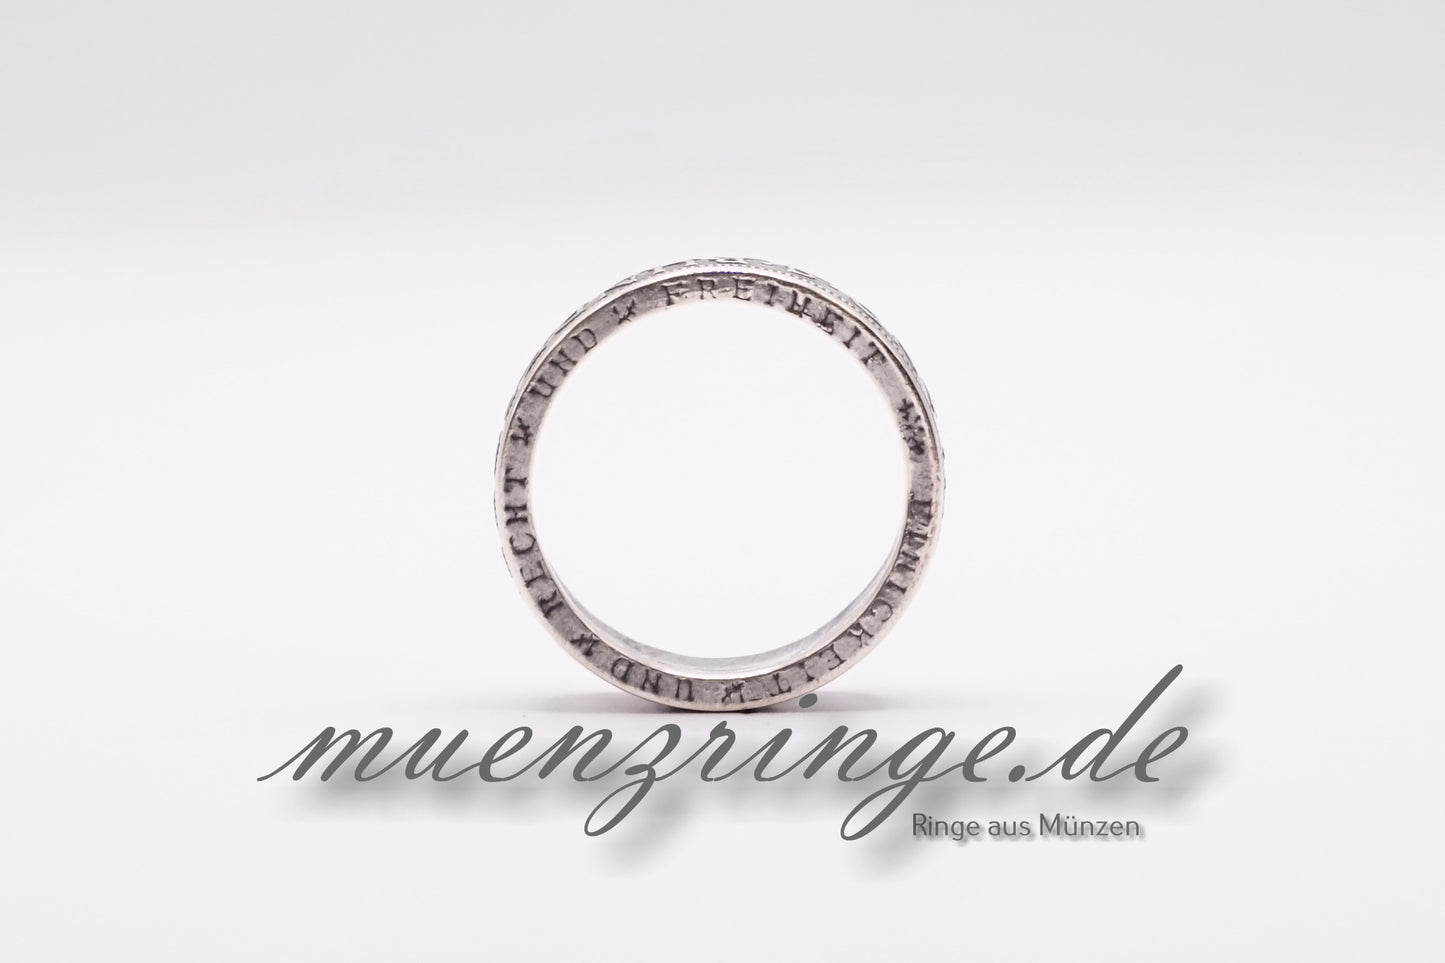 5 Deutsche Mark - Silberadler BRD mit Jahreszahl